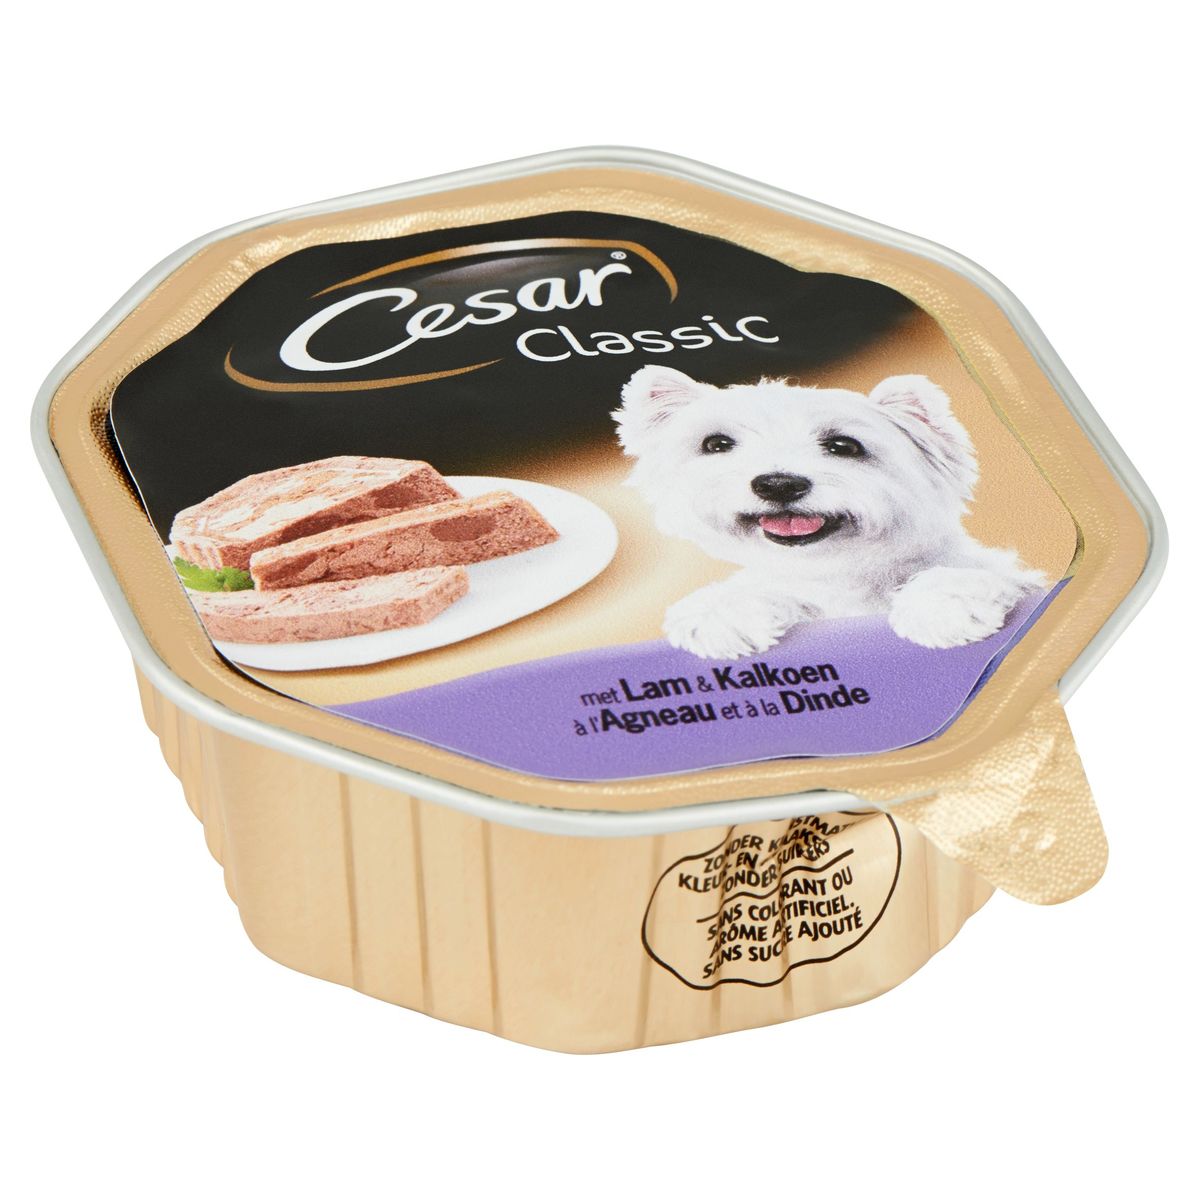 Cesar Classic Hondenvoeding Kuipje met Lam & Kalkoen 150 g